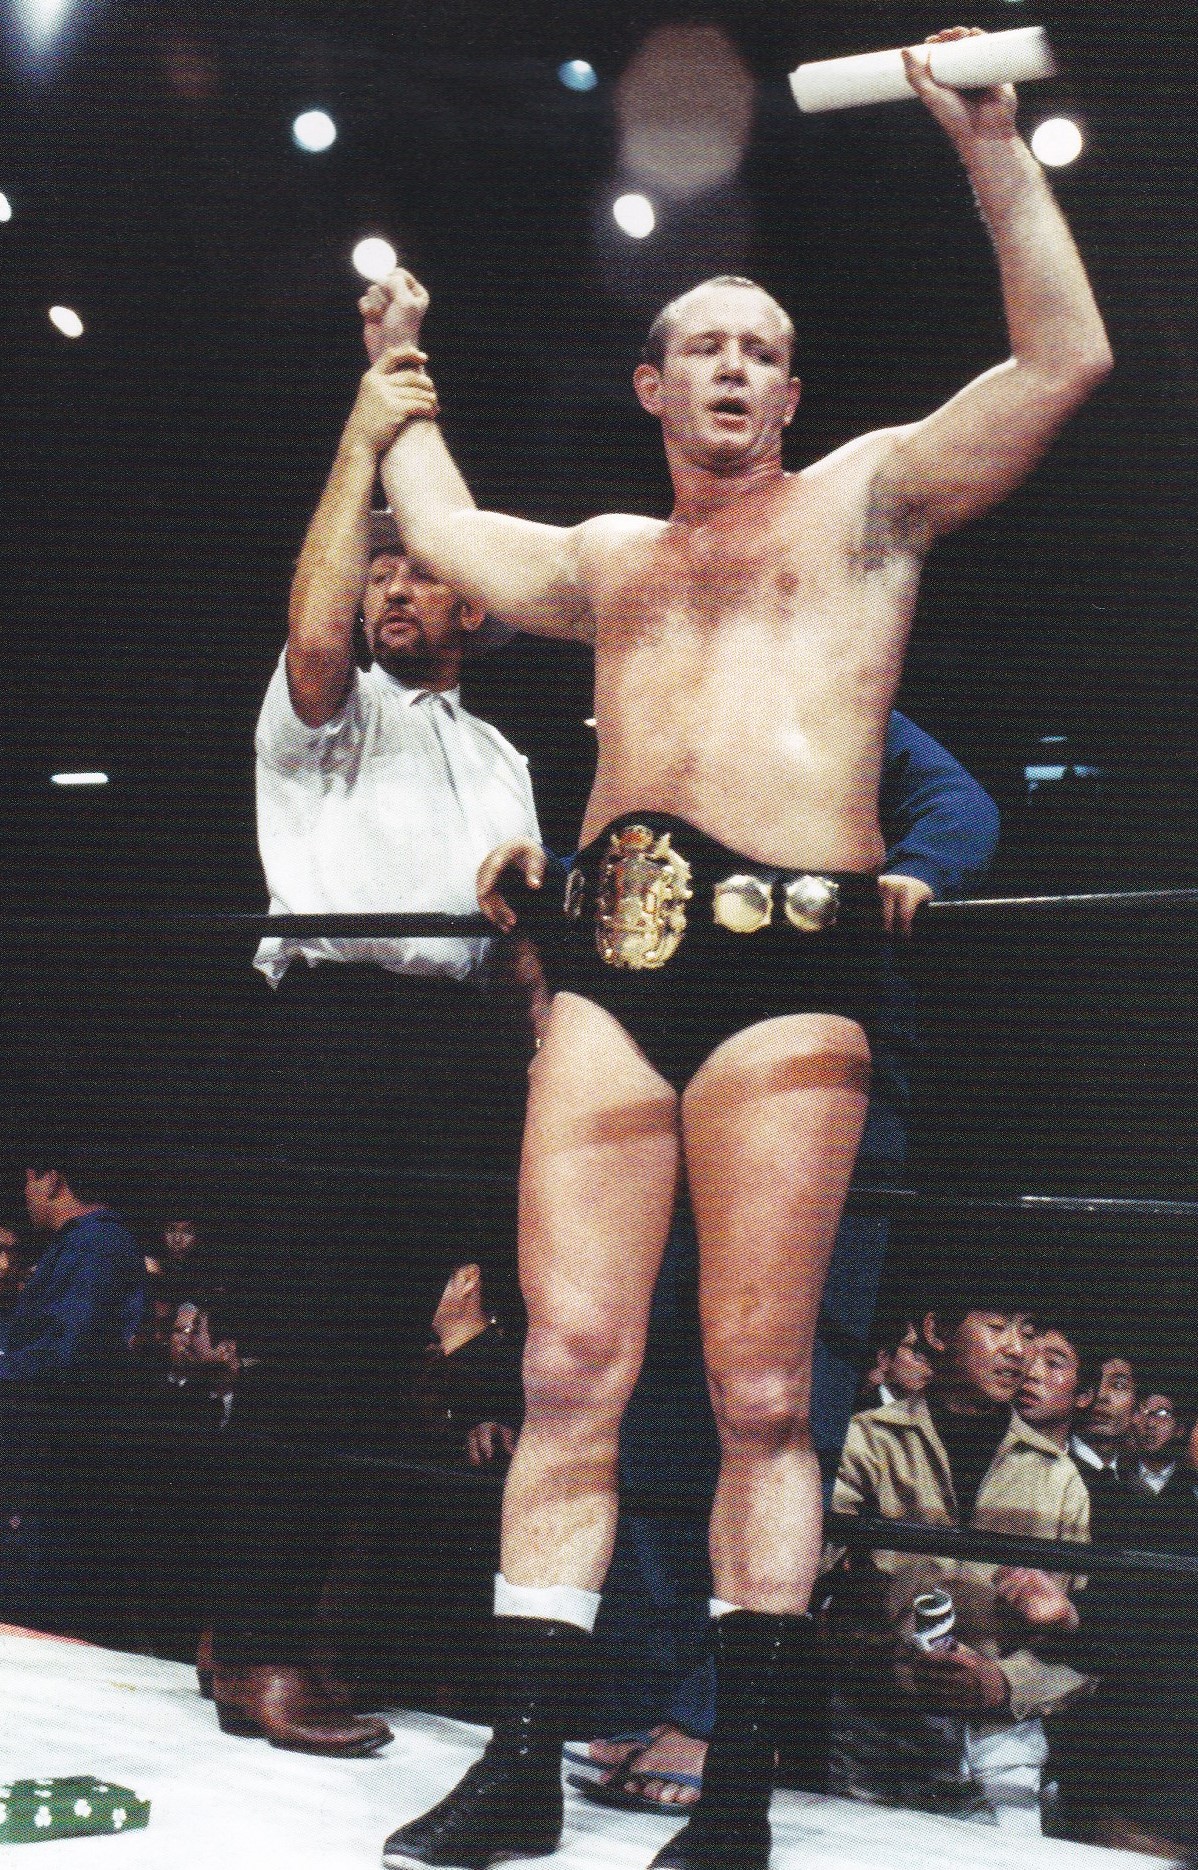 NWA世界ヘビー級王者 ドリー・ファンク・ジュニア初来日 – 伊賀